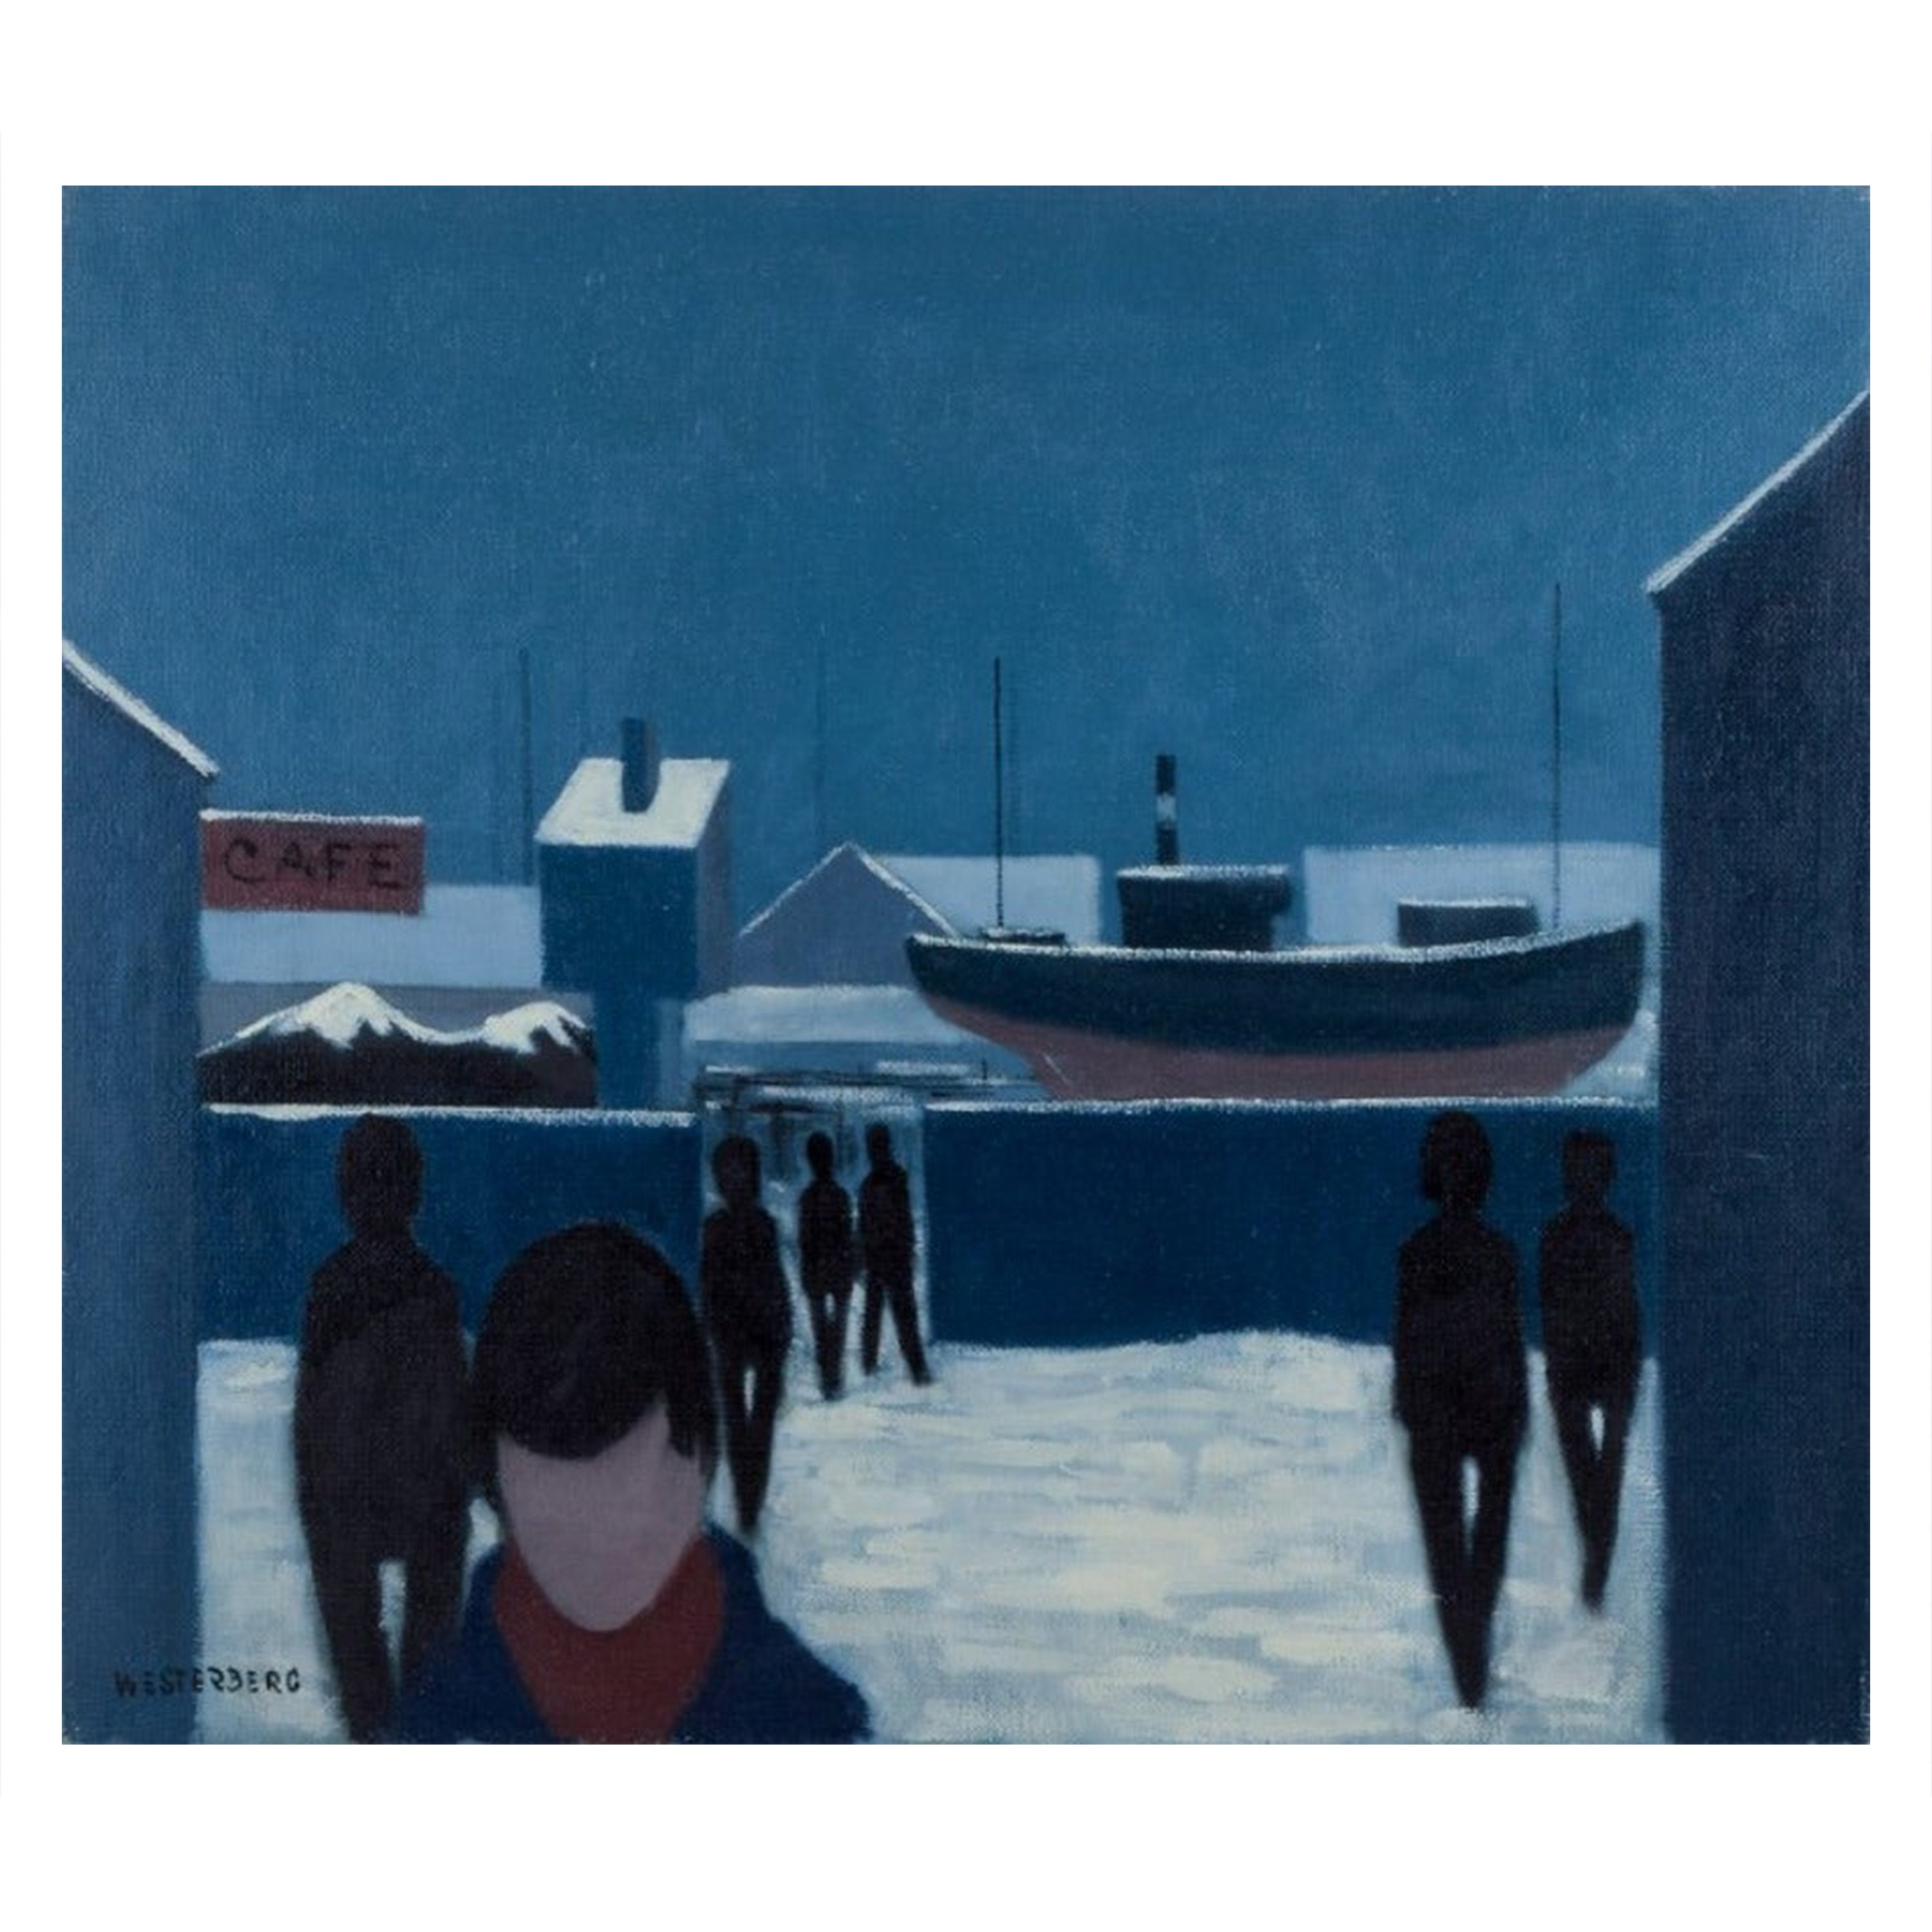 K. Westerberg alias Knud Horup. Oil on canvas. Harbor scene with people. 1970s. 